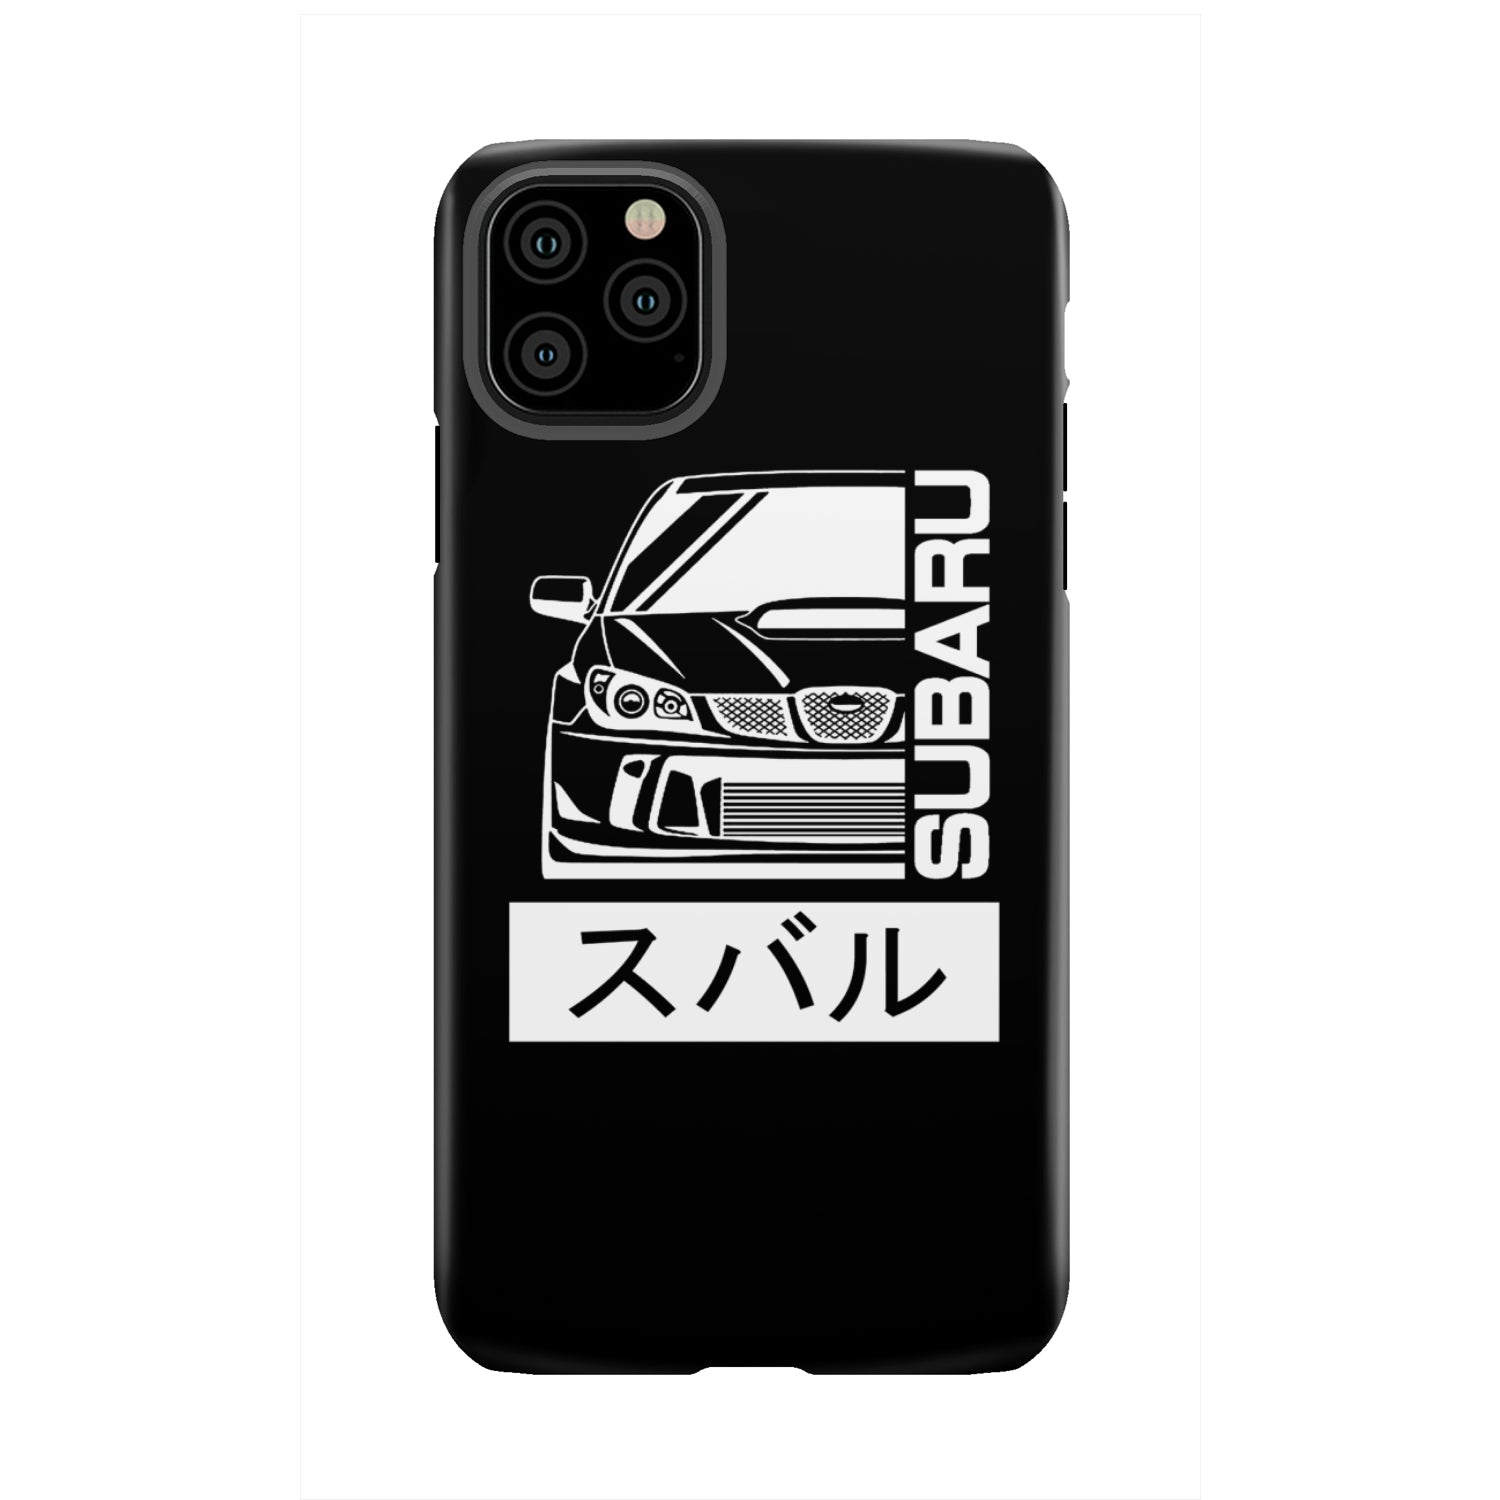 Subaru Gen 4 Phone Case